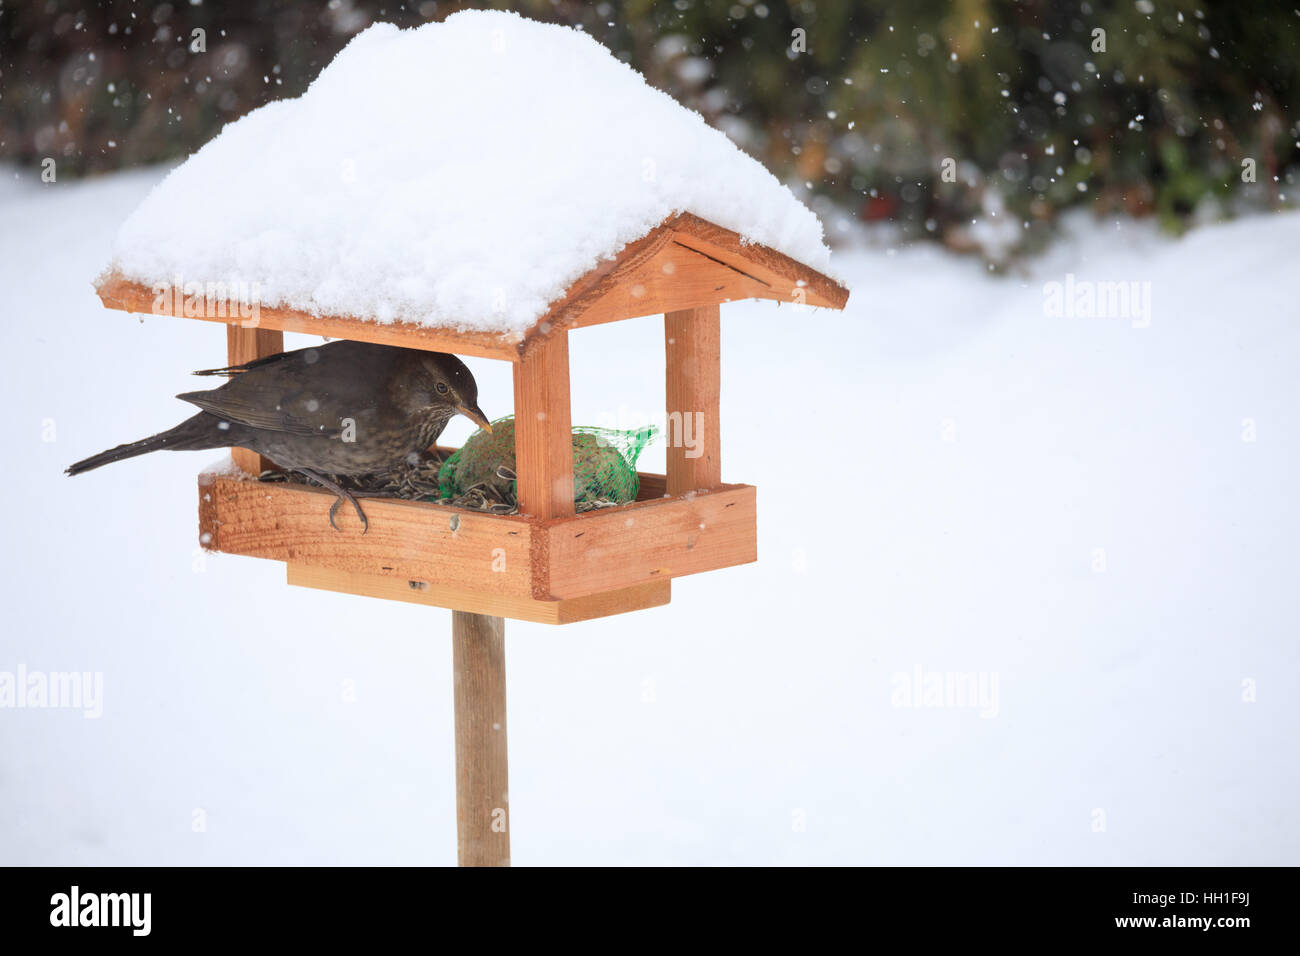 Femmina di merlo comune (Turdus merula) alimentazione in modo semplice in casa legno Bird Feeder, birdhouse installato su giardino d inverno in giornata nevosa Foto Stock